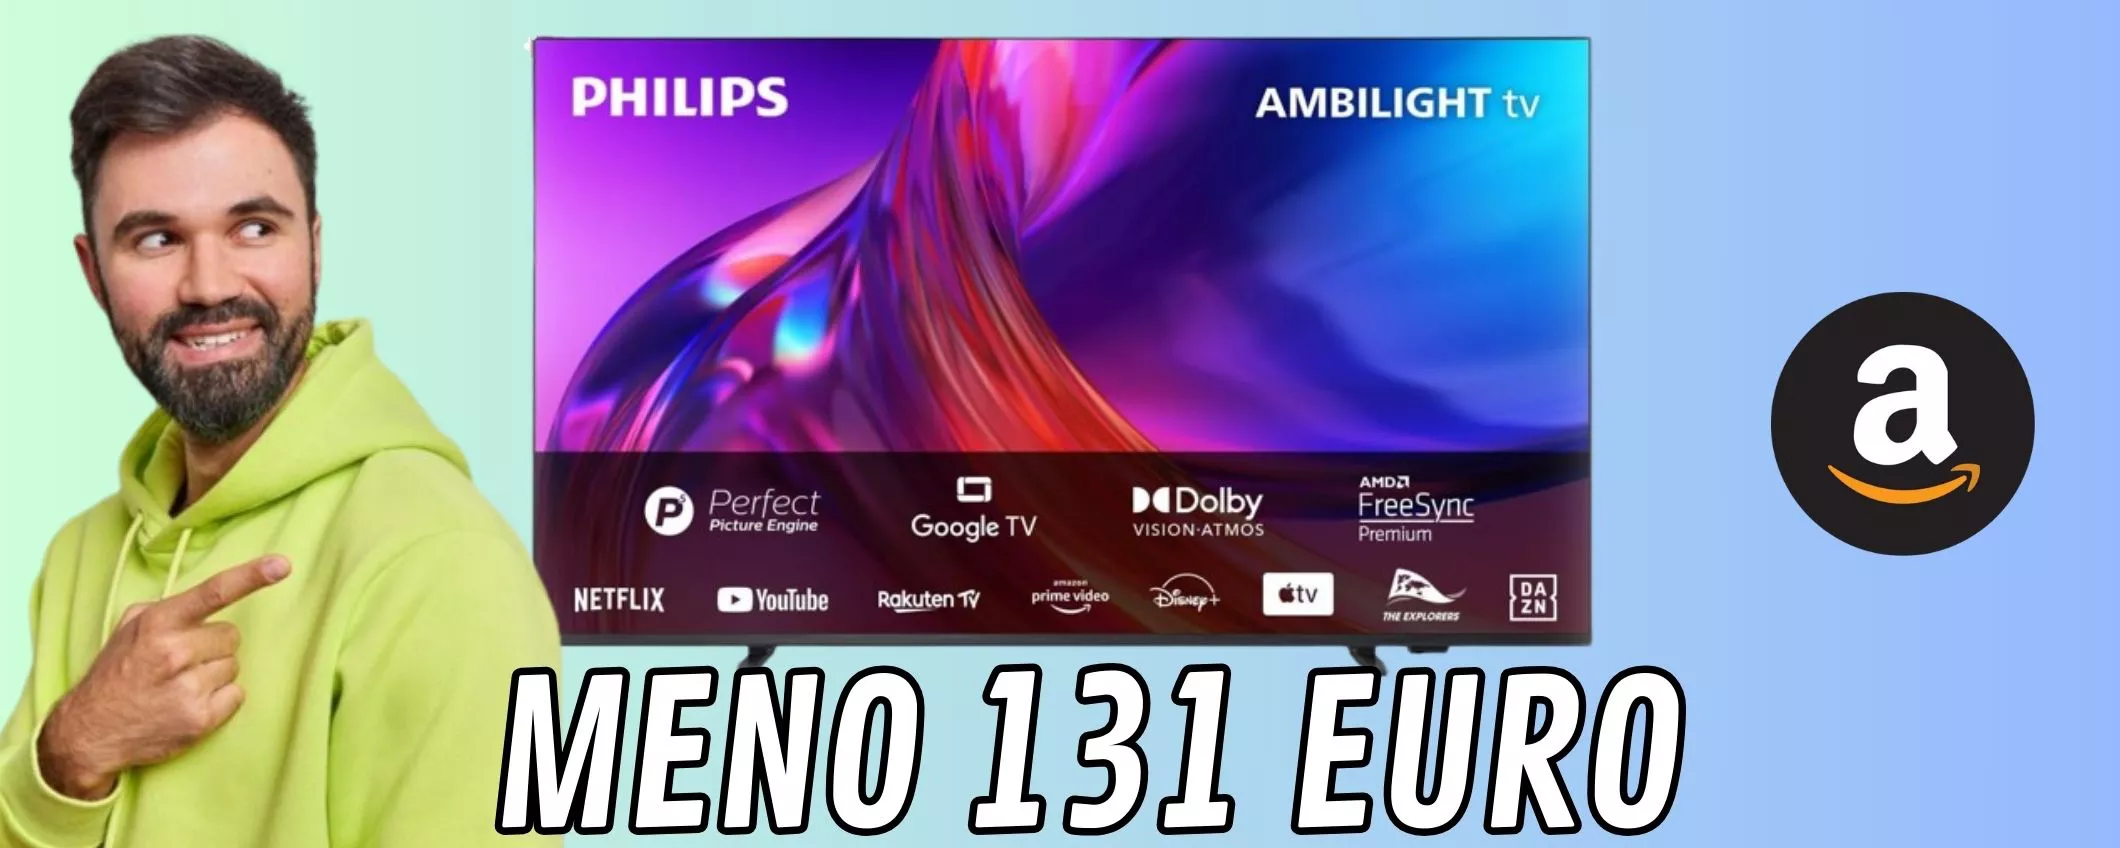 PHILIPS TV 4K LED  55 pollici: il prezzo crolla per questa ottima smart tv con Ambilight